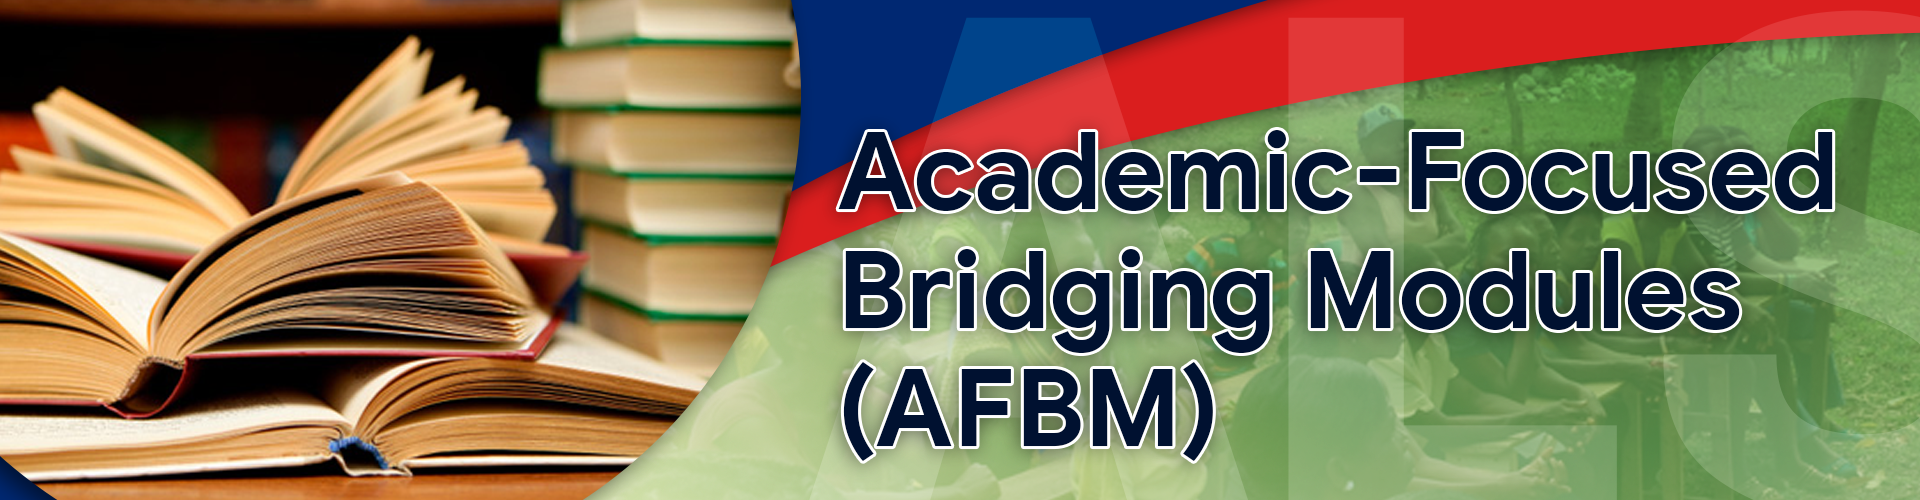 A&E Academic-Focused Bridging Modules (AFBM)